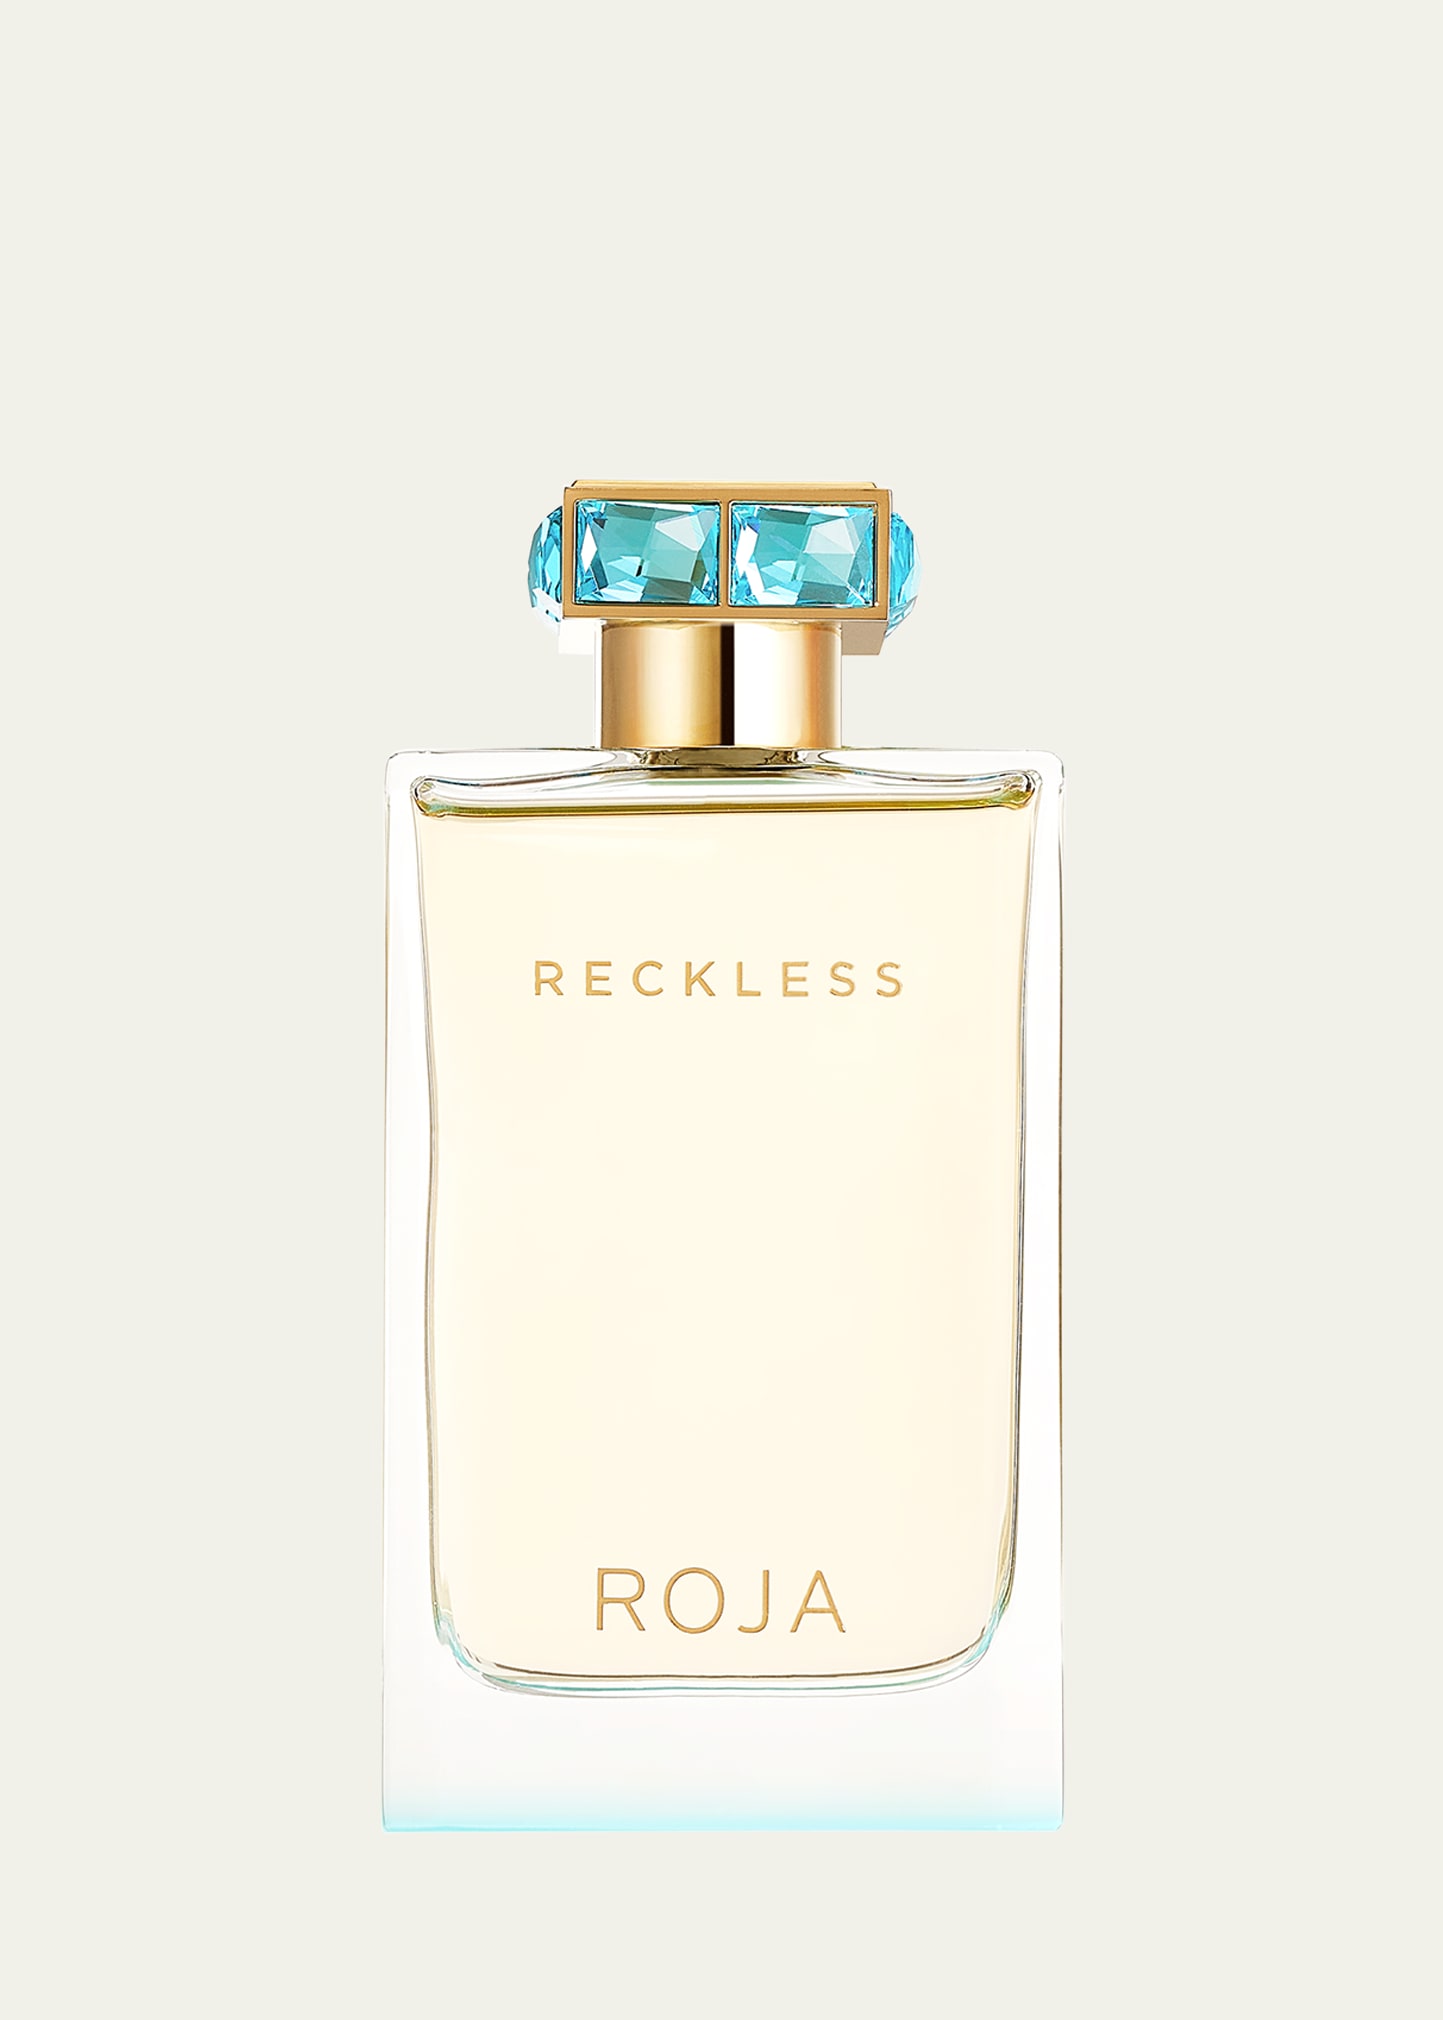 Reckless Pour Femme Eau de Parfum, 2.5 oz.